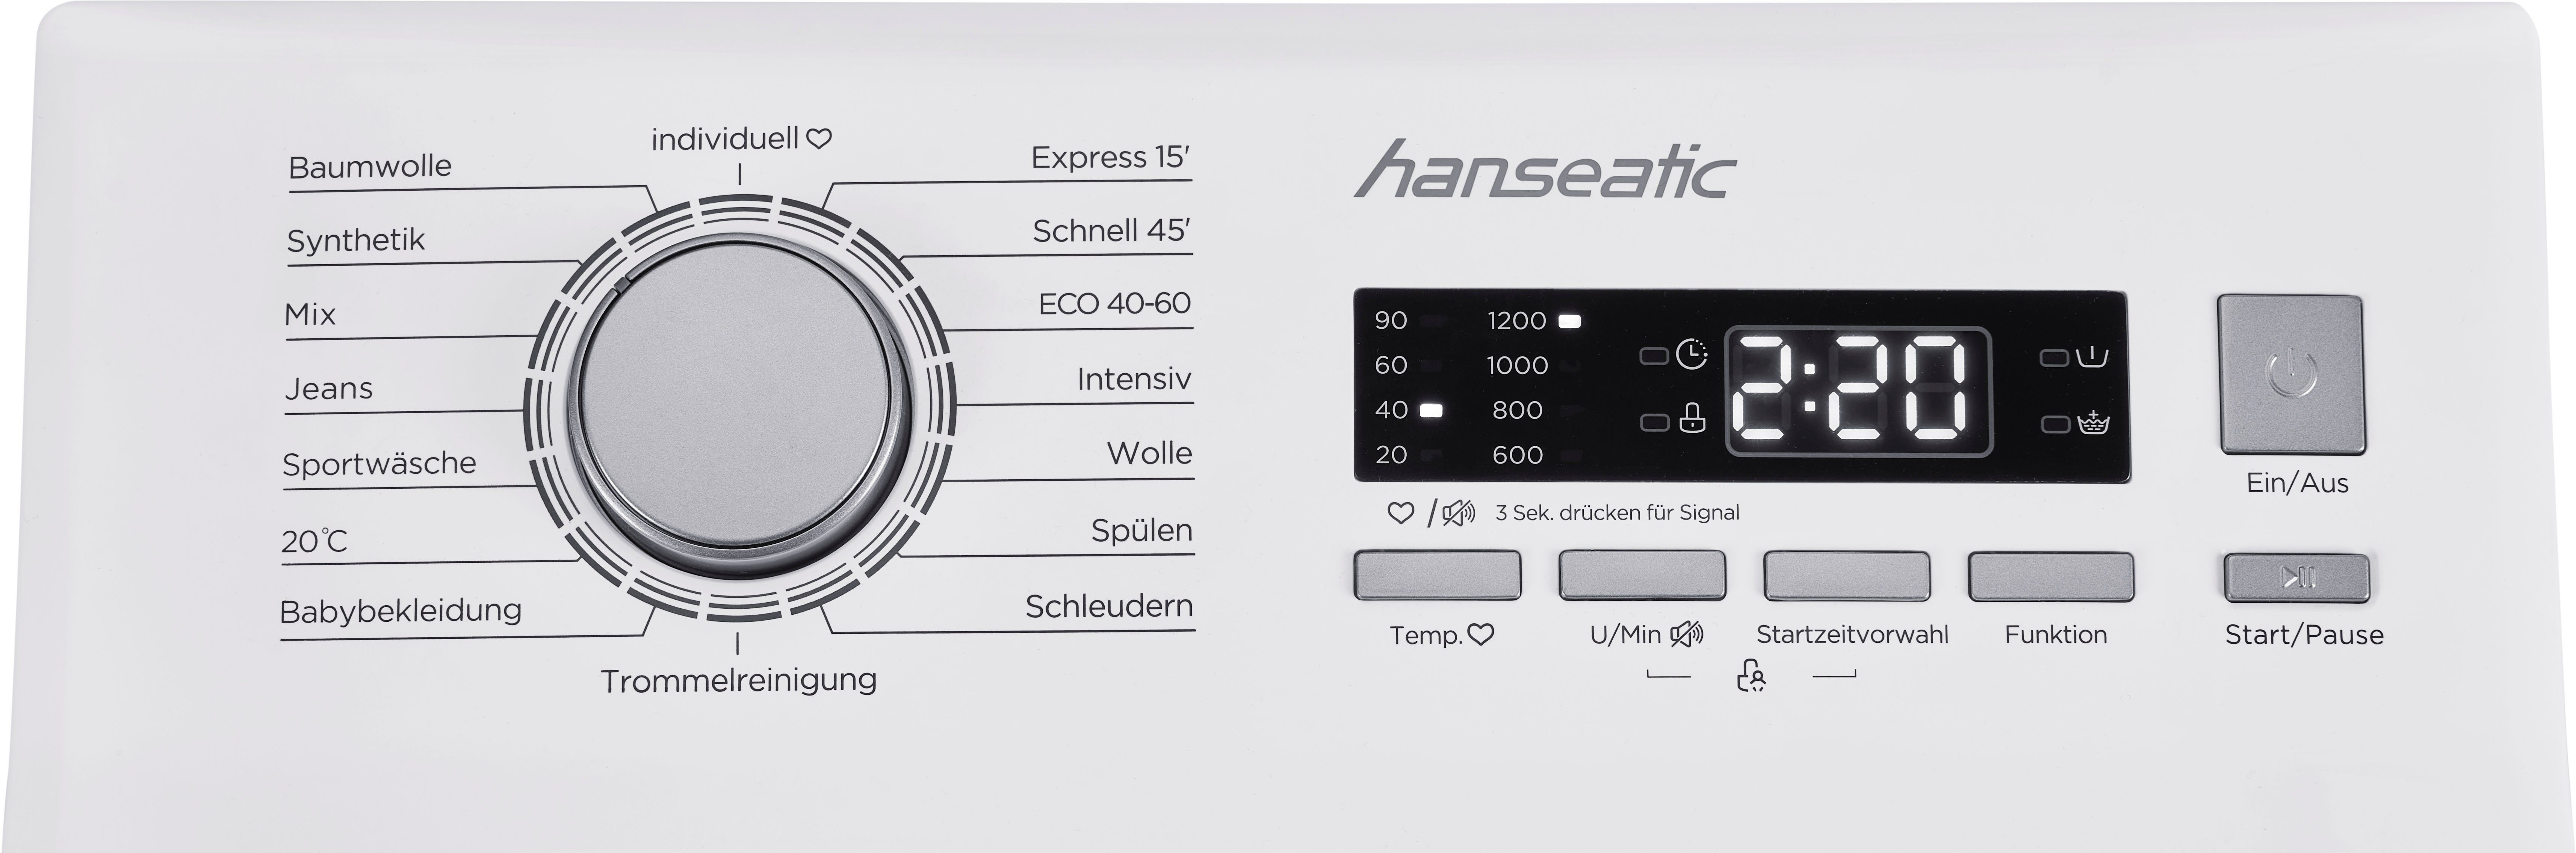 Waschmaschine HTW712D, Mengenautomatik, Hanseatic 7 Toplader kg, U/min, Überlaufschutzsystem 1200